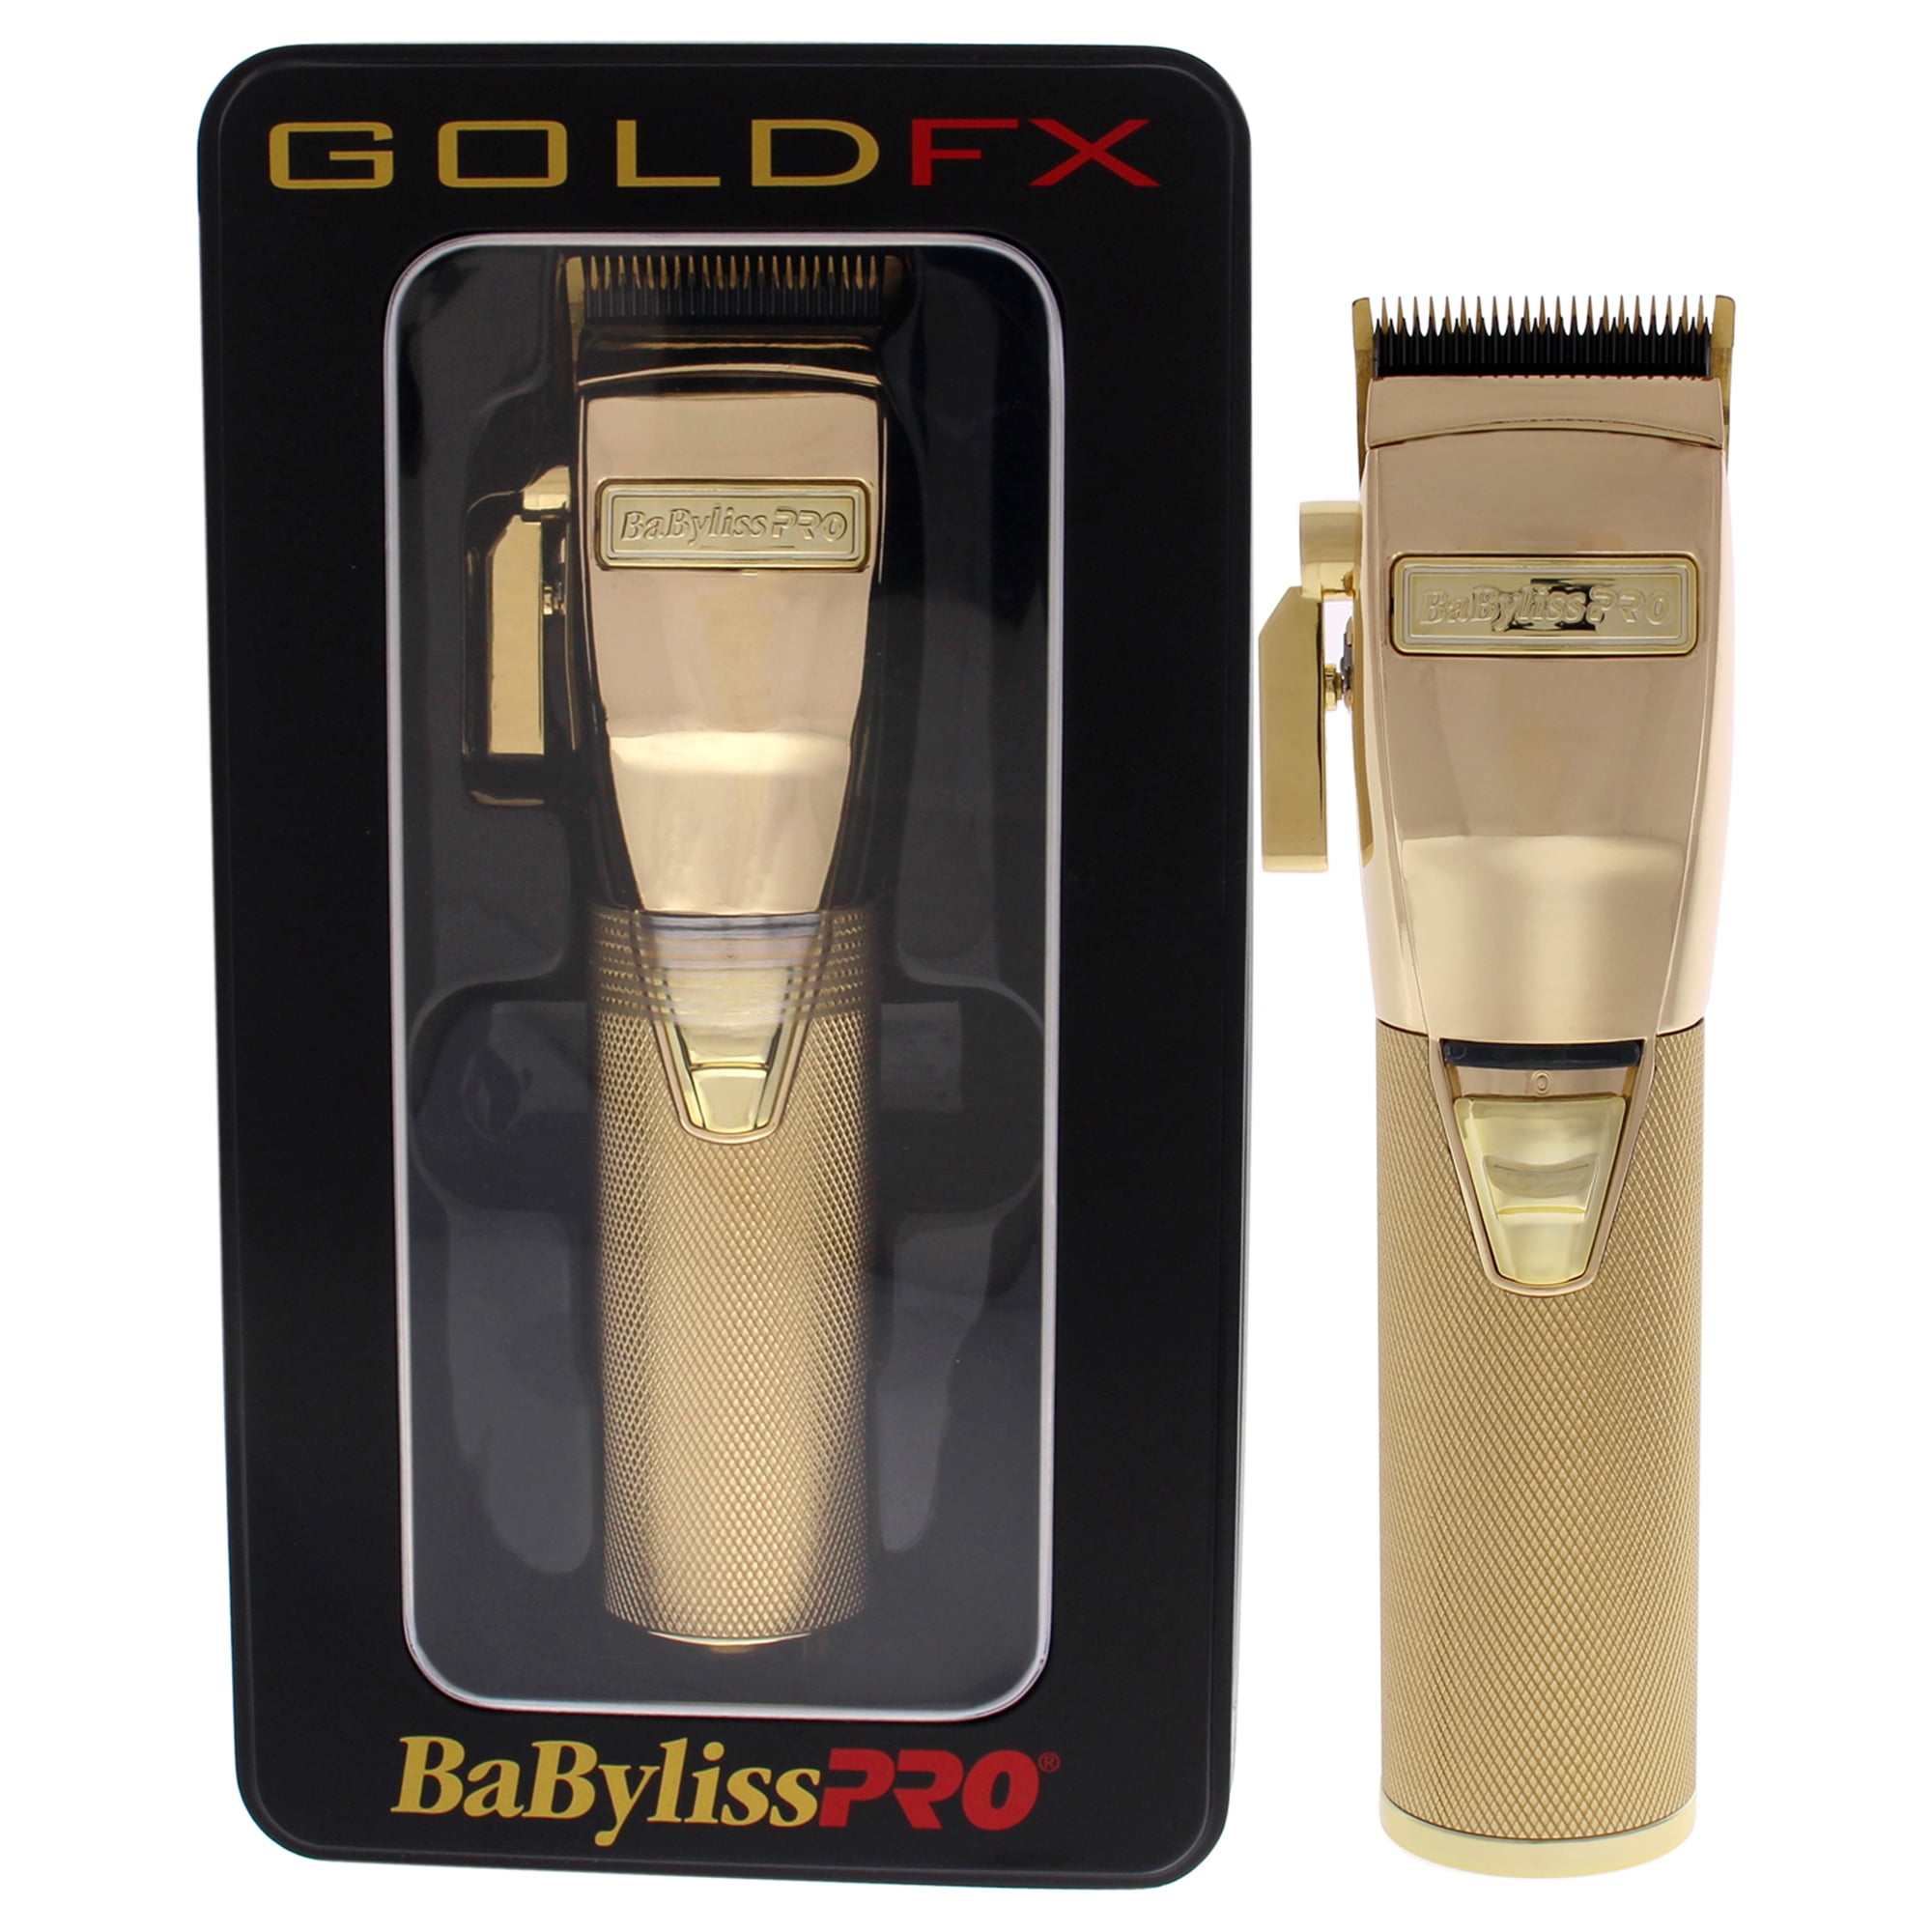 gold fx razor